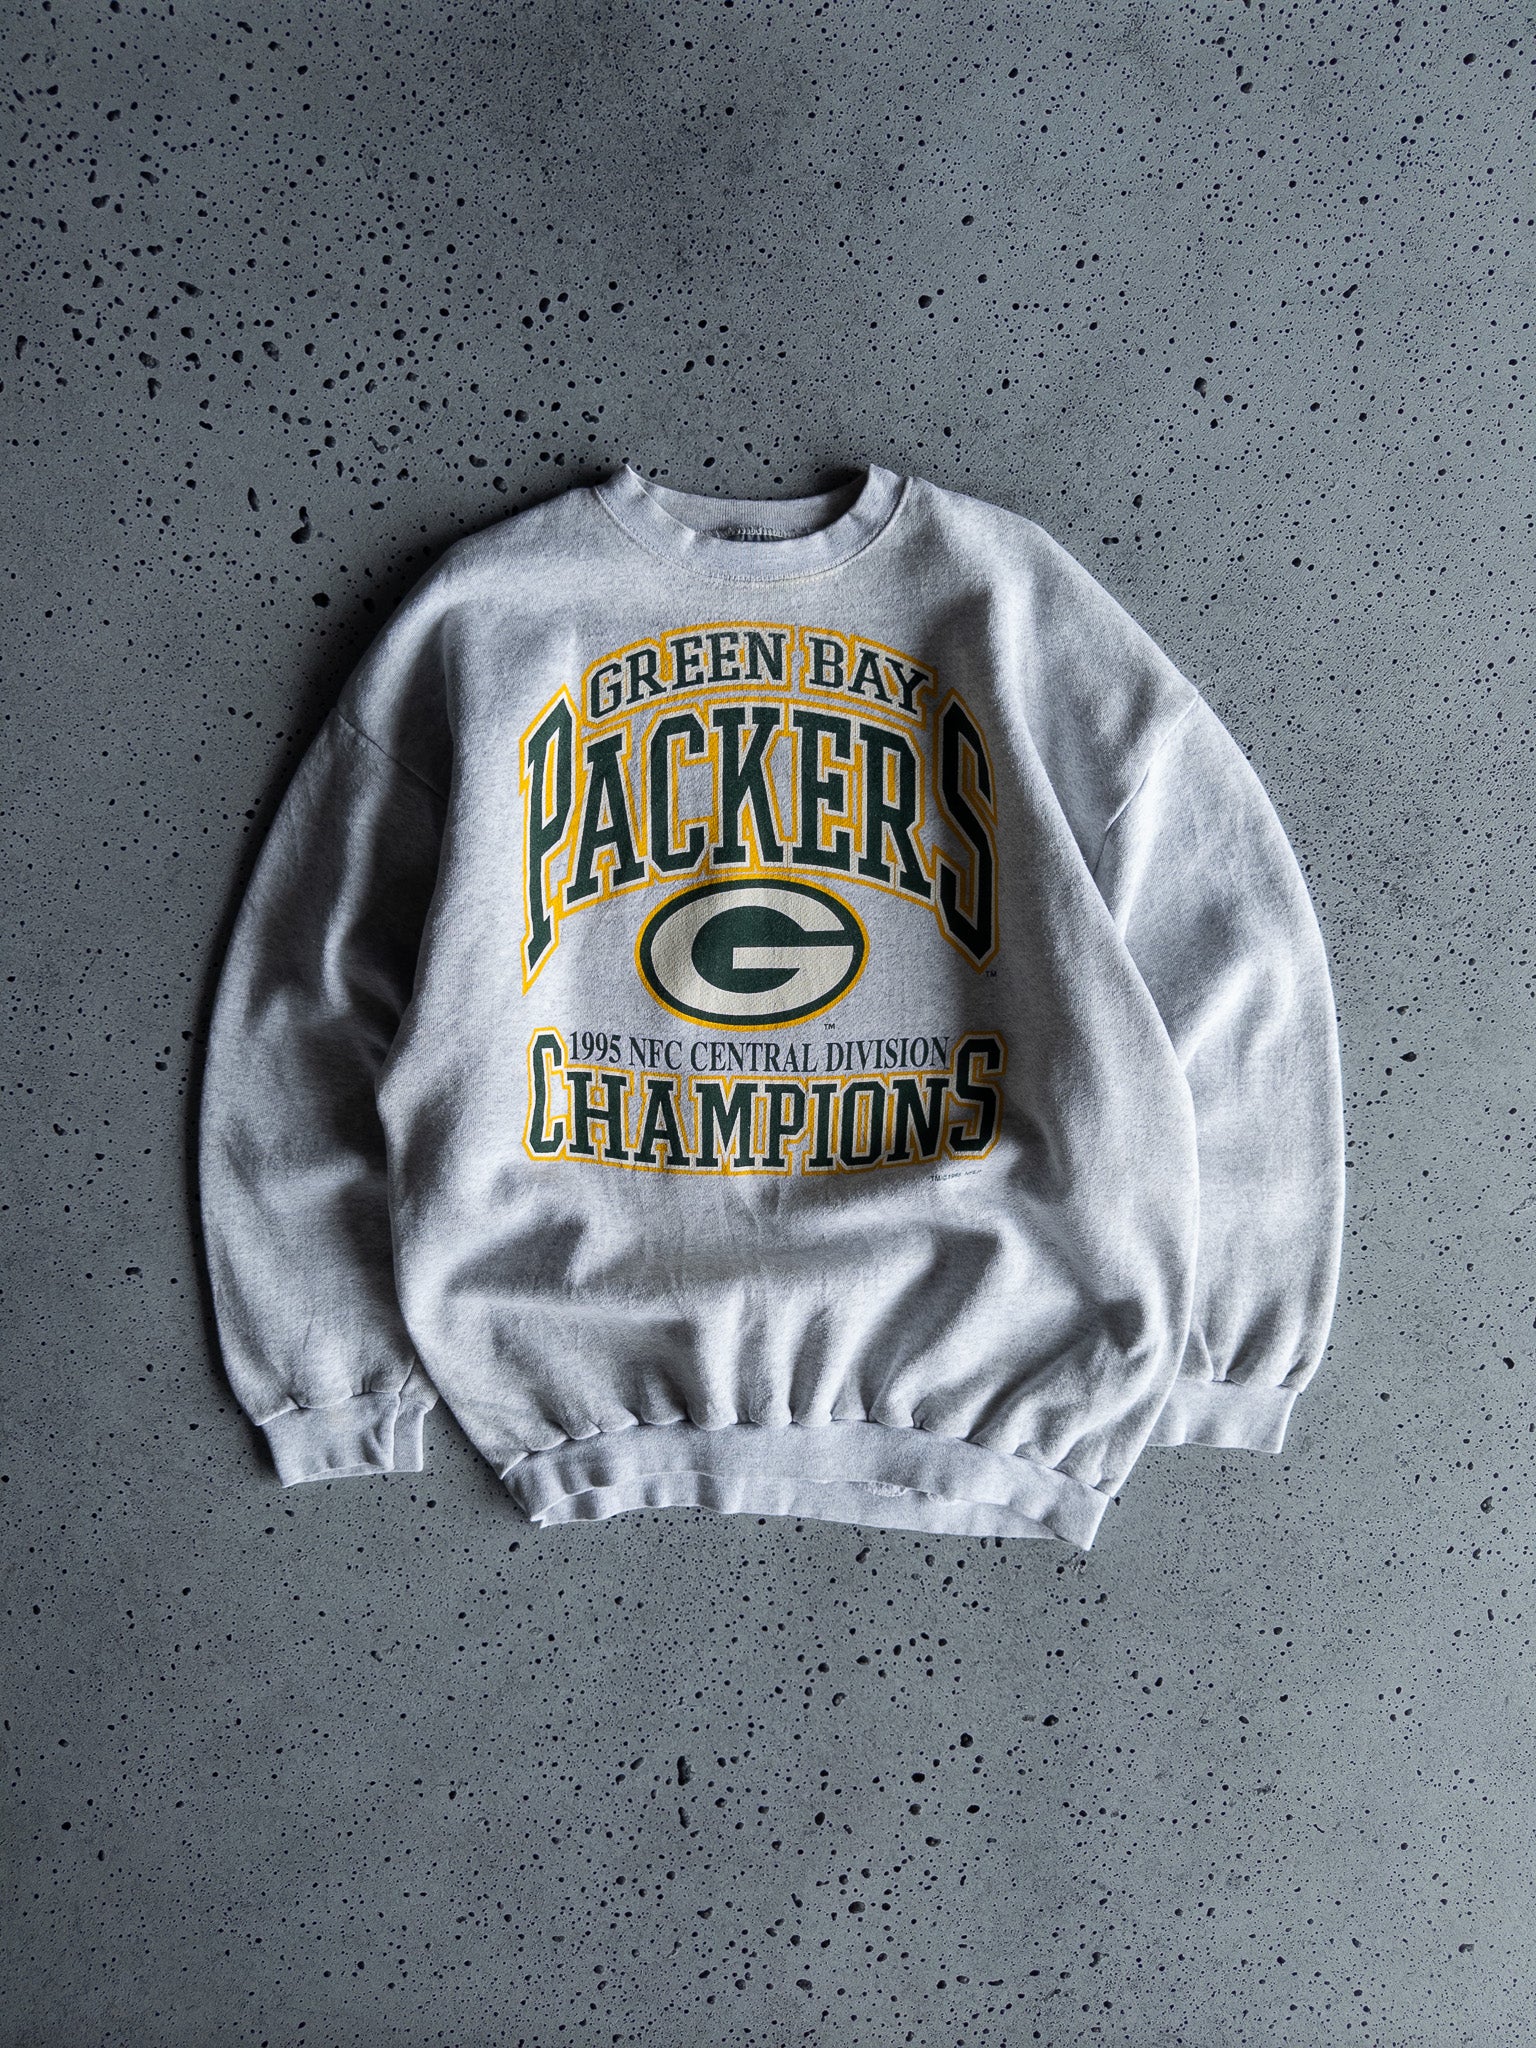 Vintage Green Bay Packers 1995 Sweatshirt (XL)